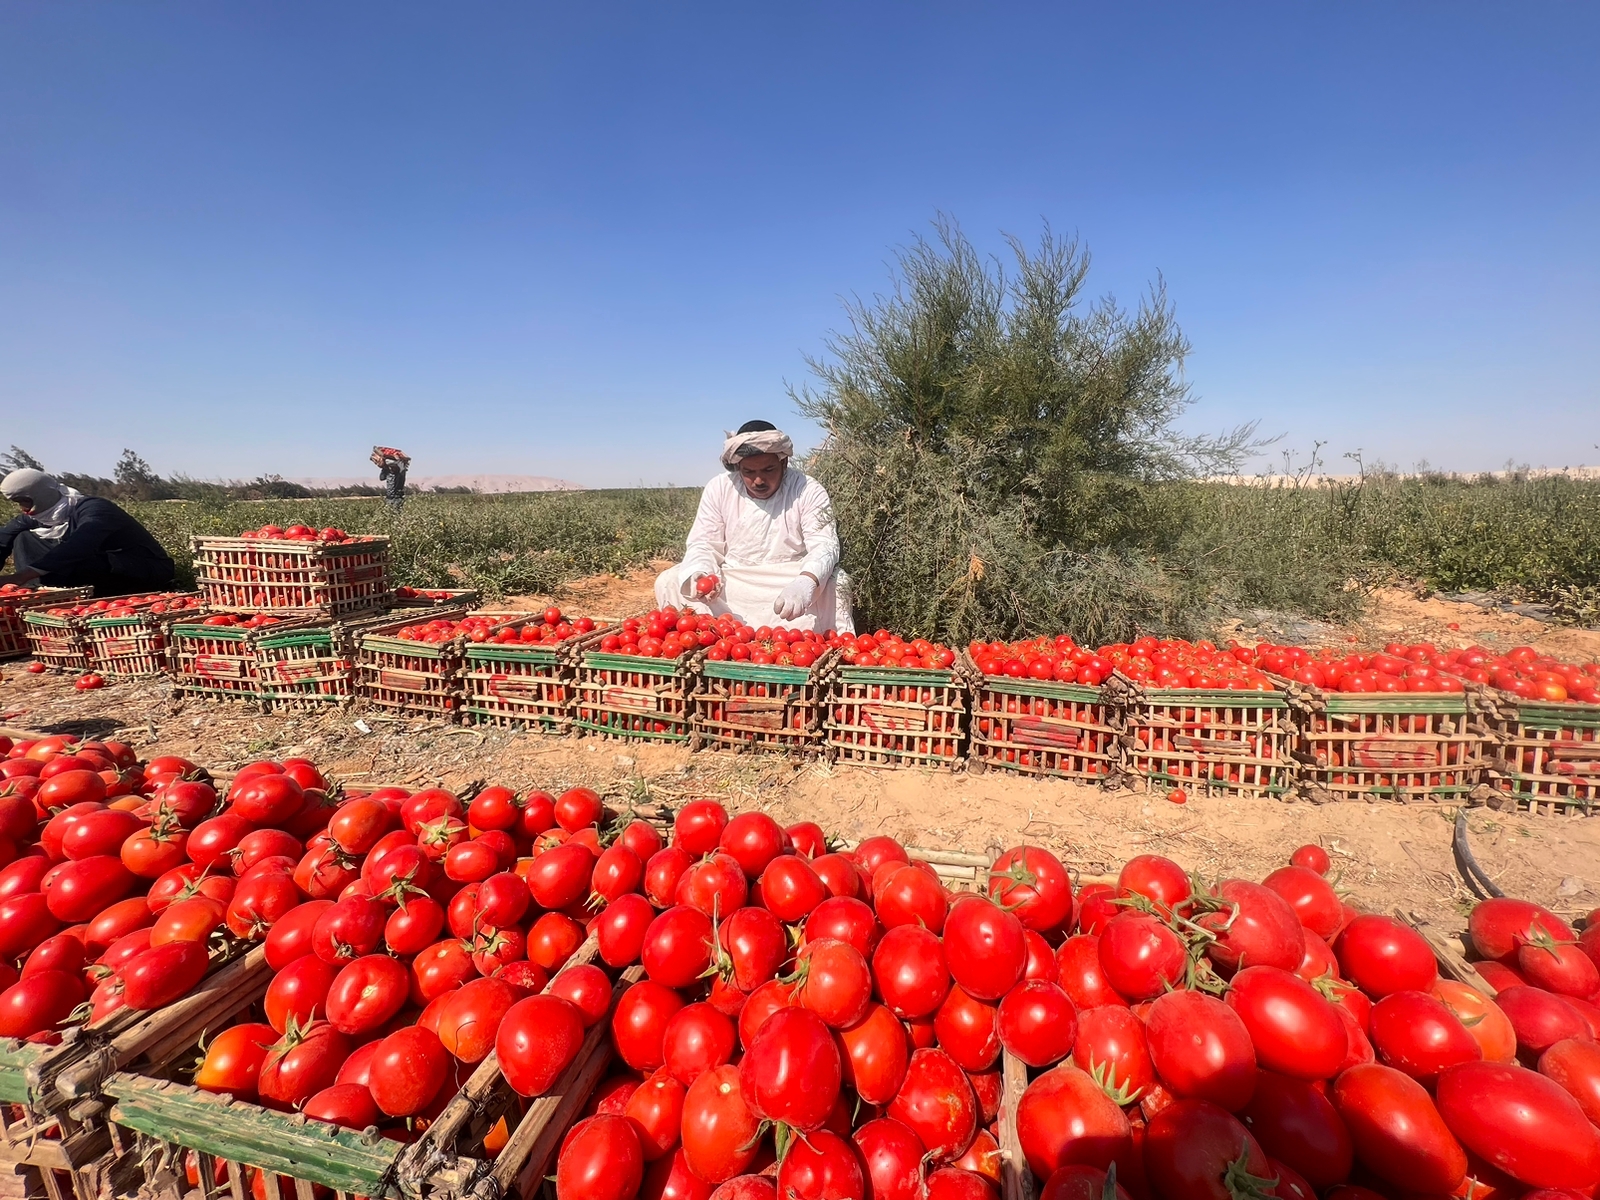 المزارعين خلال العمل بحصاد الطماطم